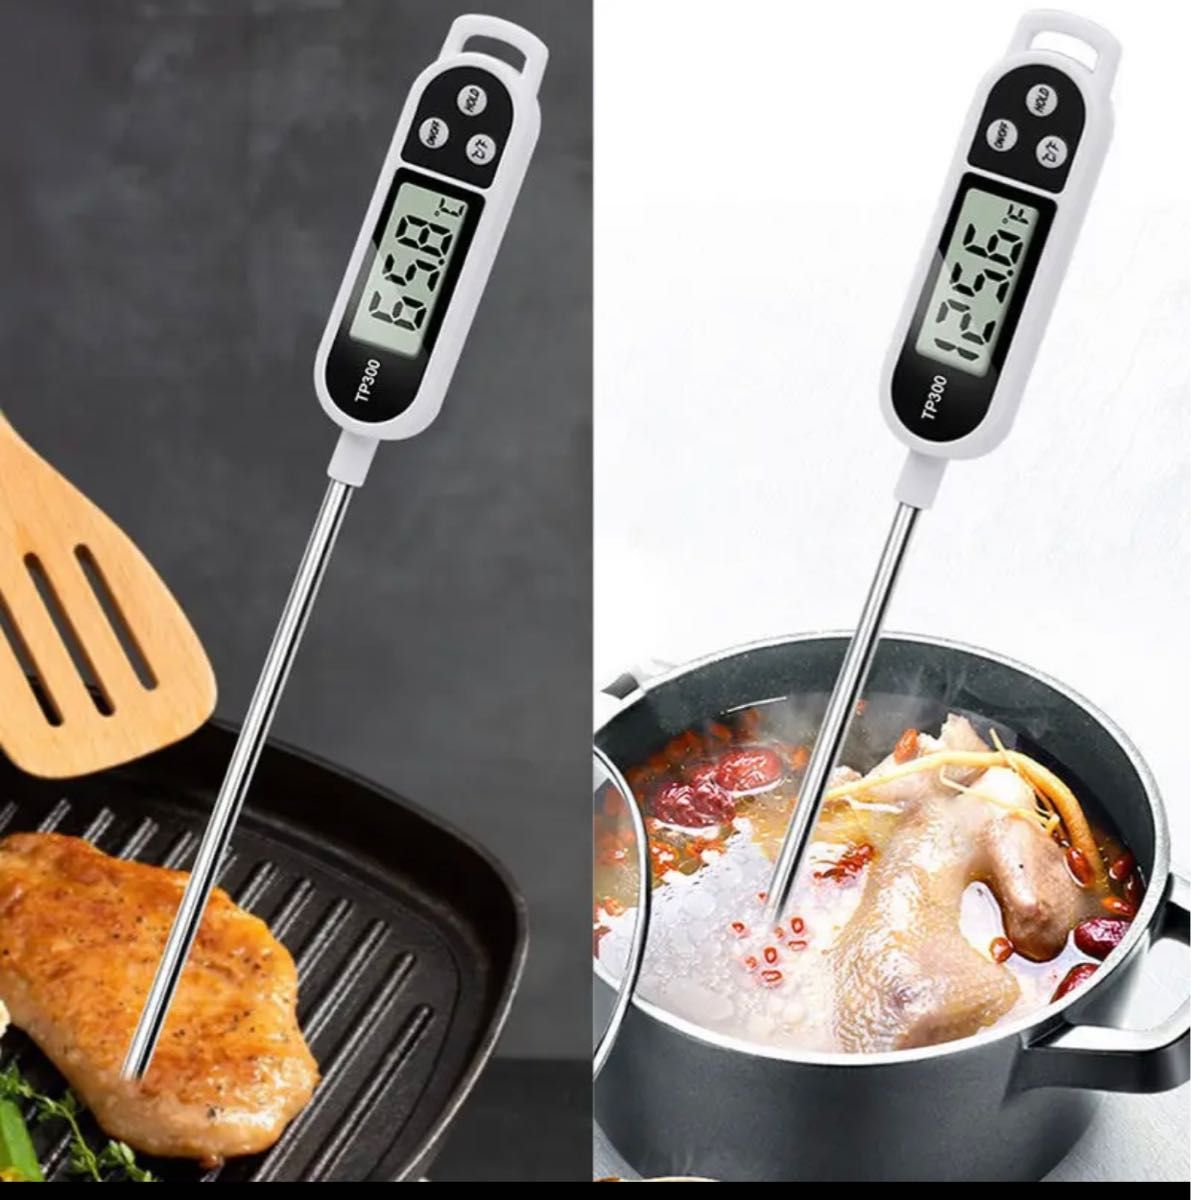 クッキング温度計 キッチン ミルク 料理 揚げ物 調理 食品温度計 料理用温度計